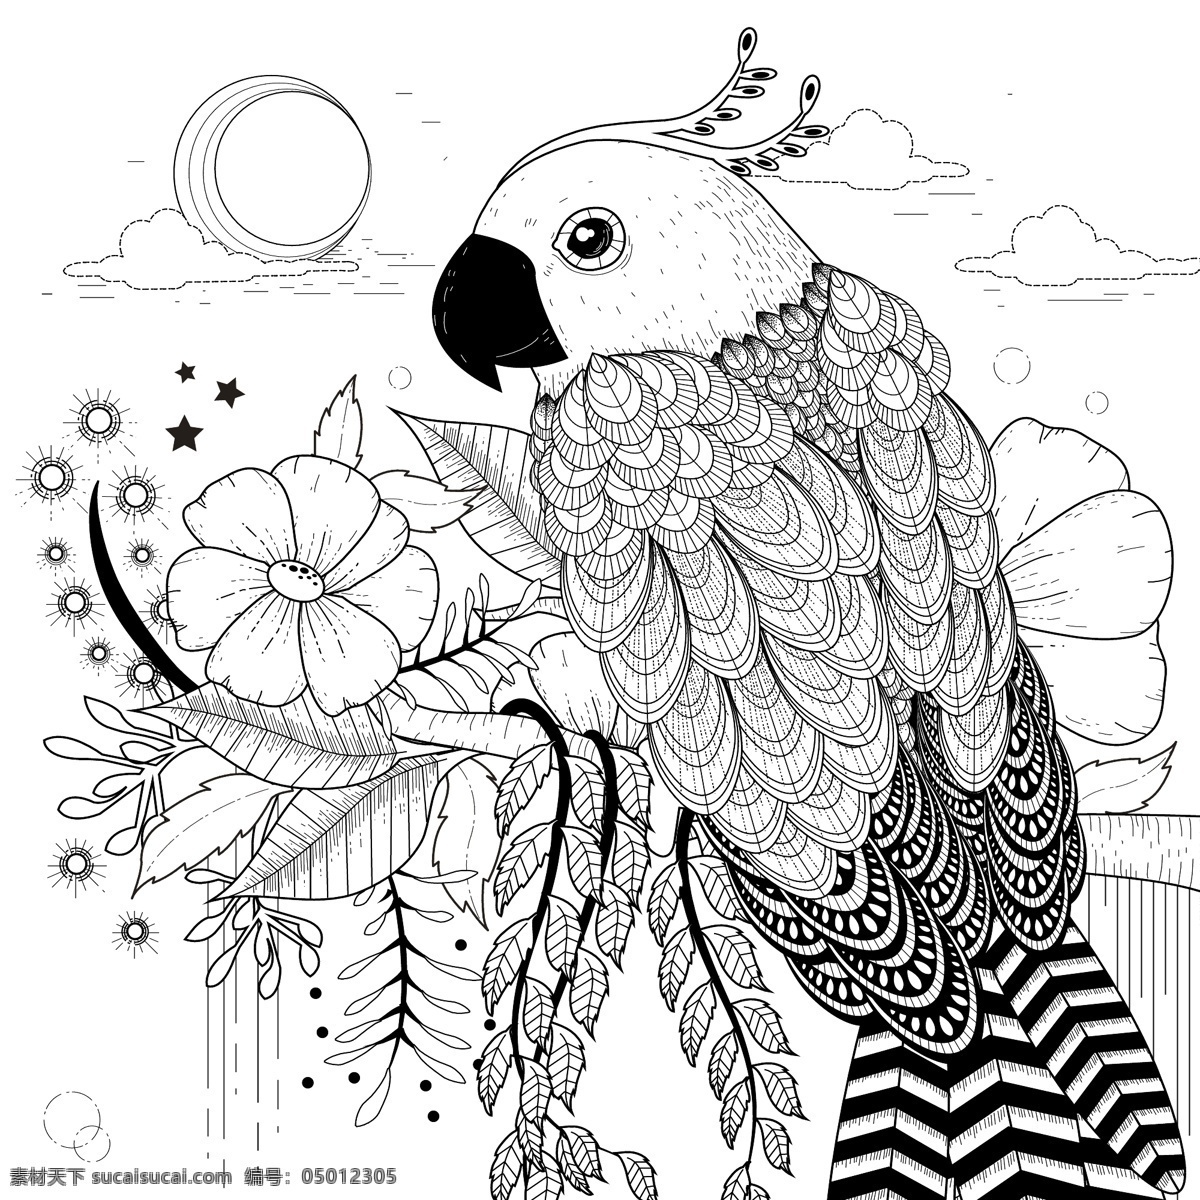 黑白 手绘 鹦鹉 插画 白描 动物 花朵 植物